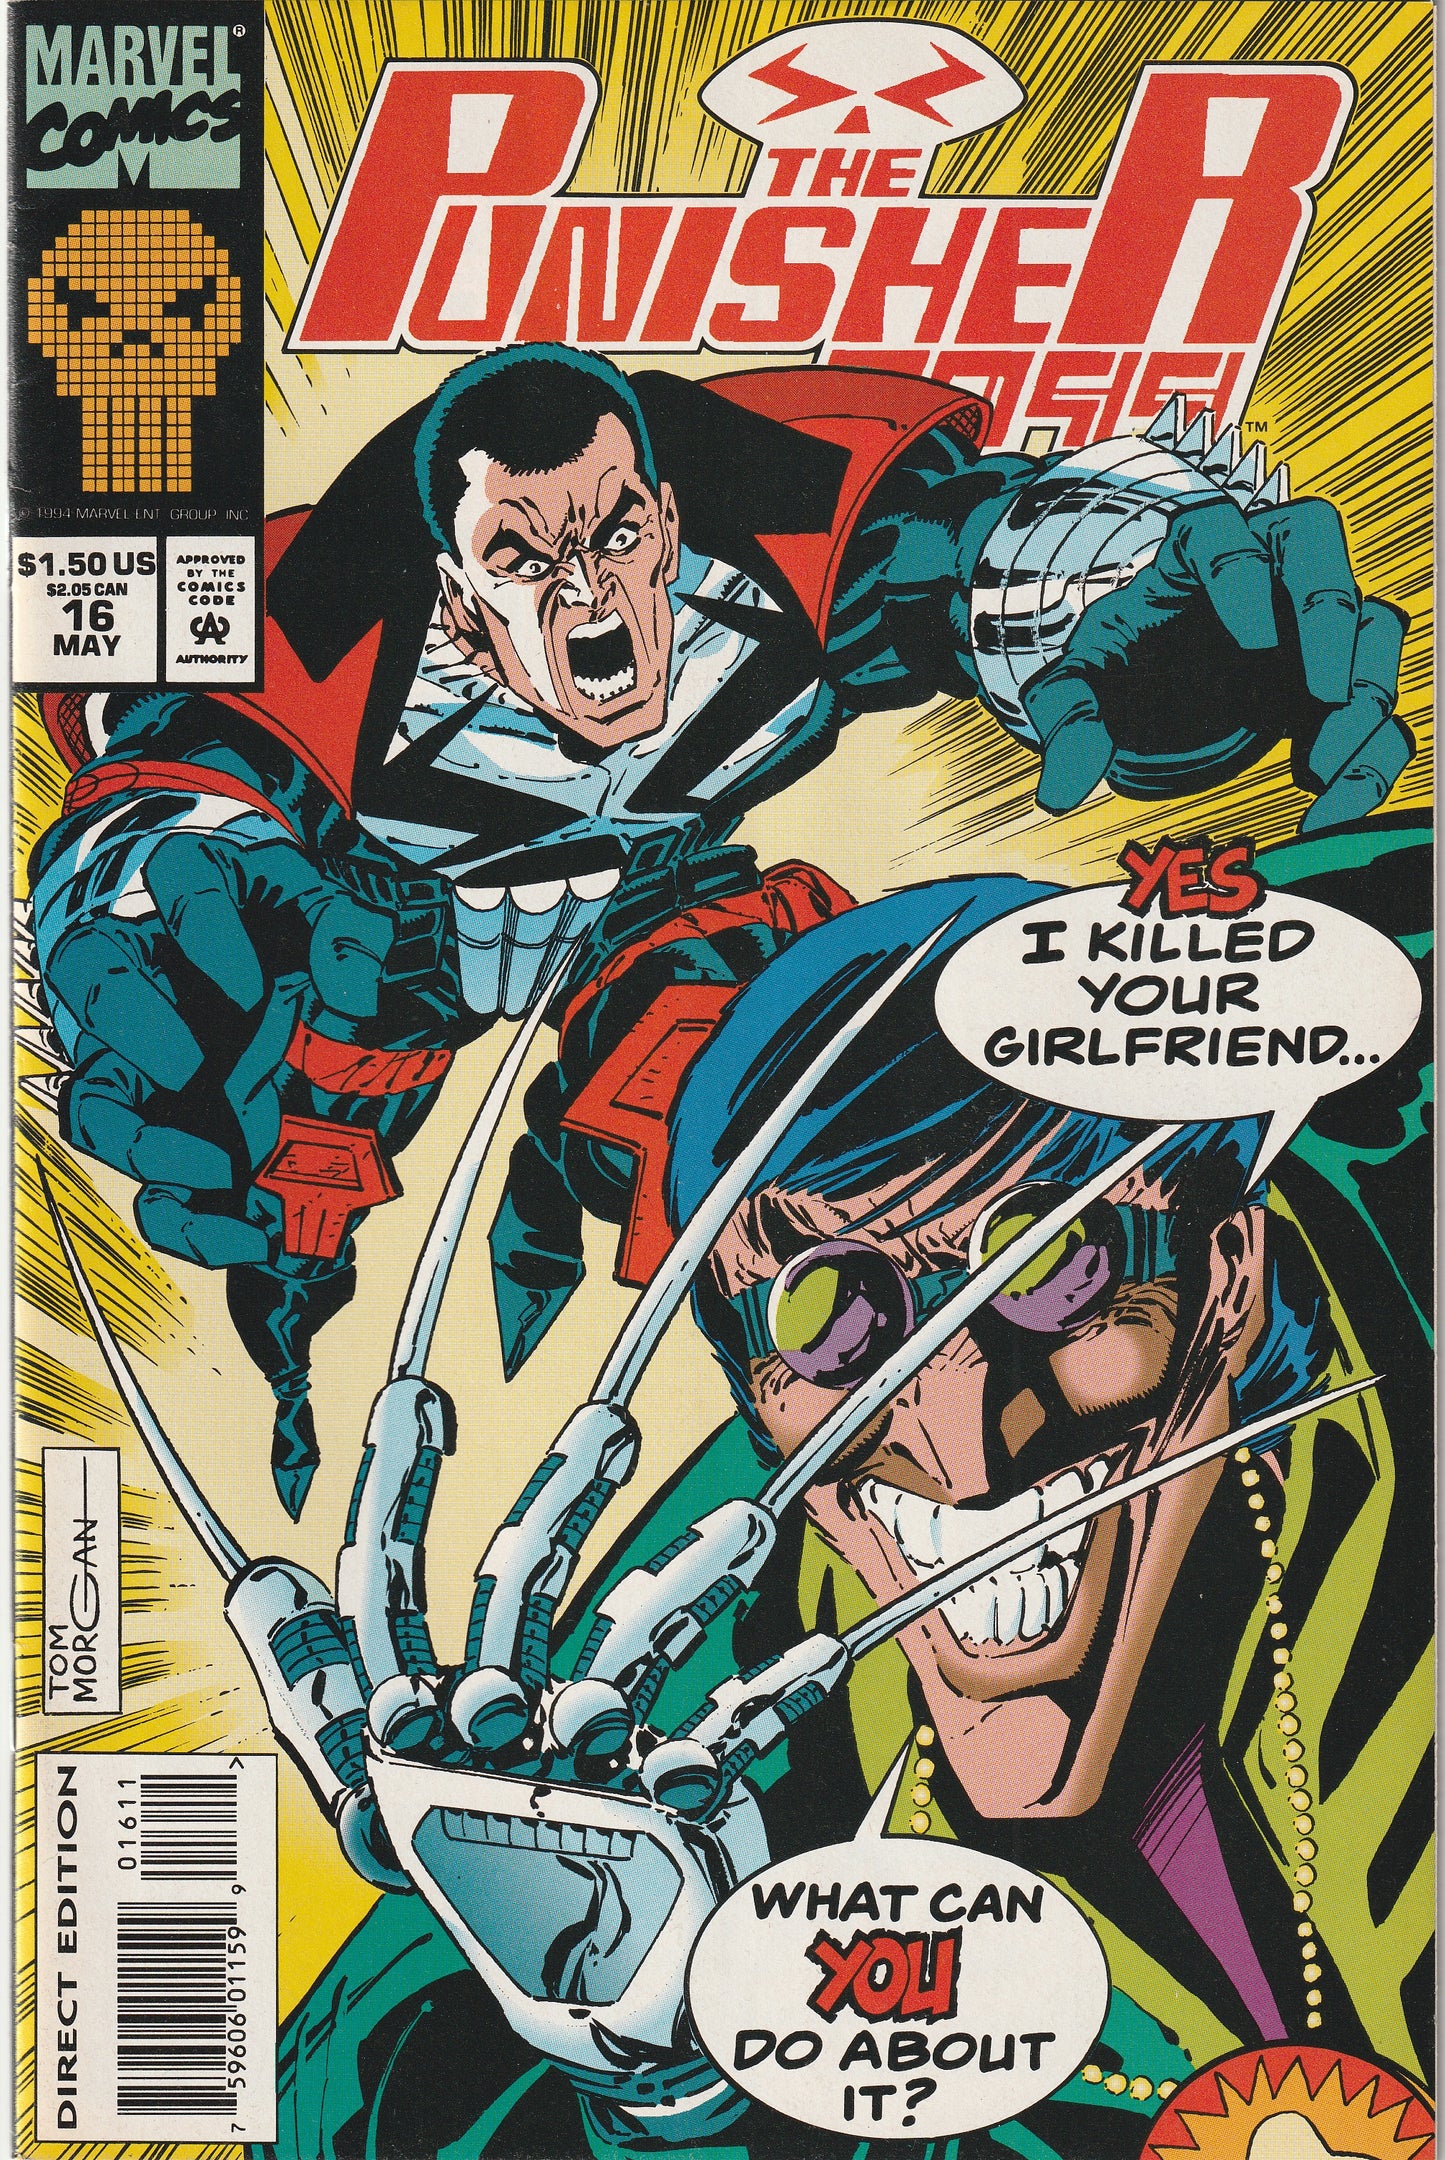 Punisher 2099 #16 (1994) - Marvel Masterworks cards attached